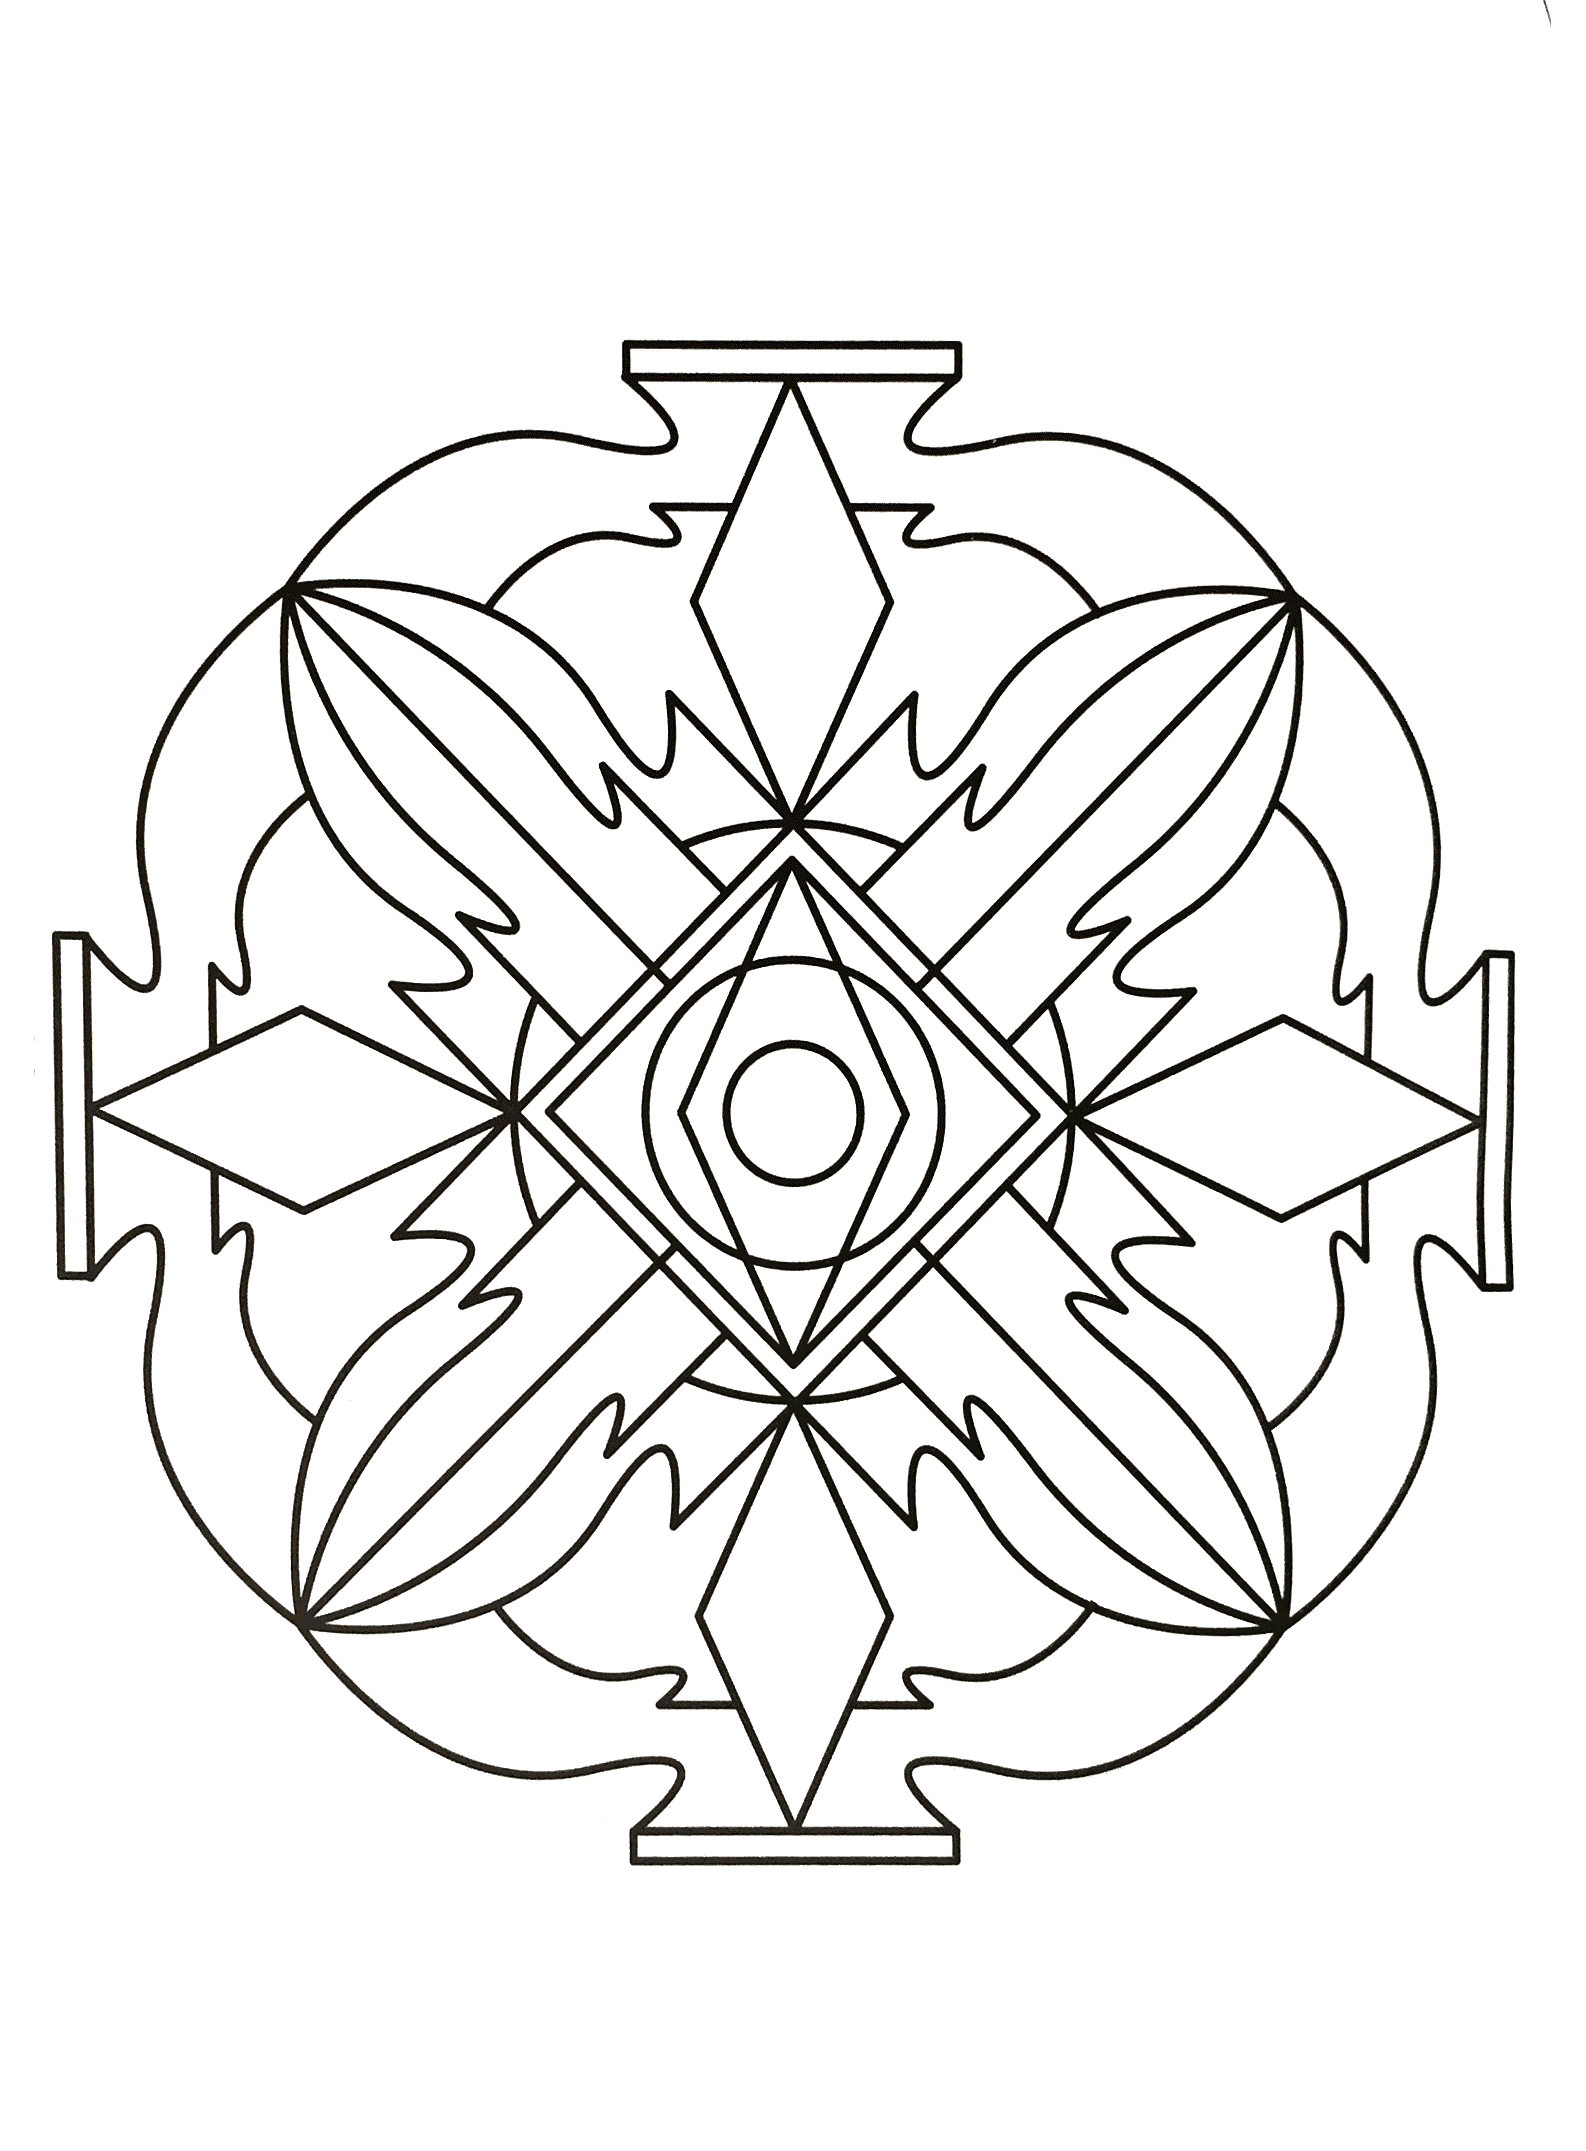 Un Mandala facile parfait si vous avez envie de simplicité ou que vous disposez de peu de temps pour colorier.